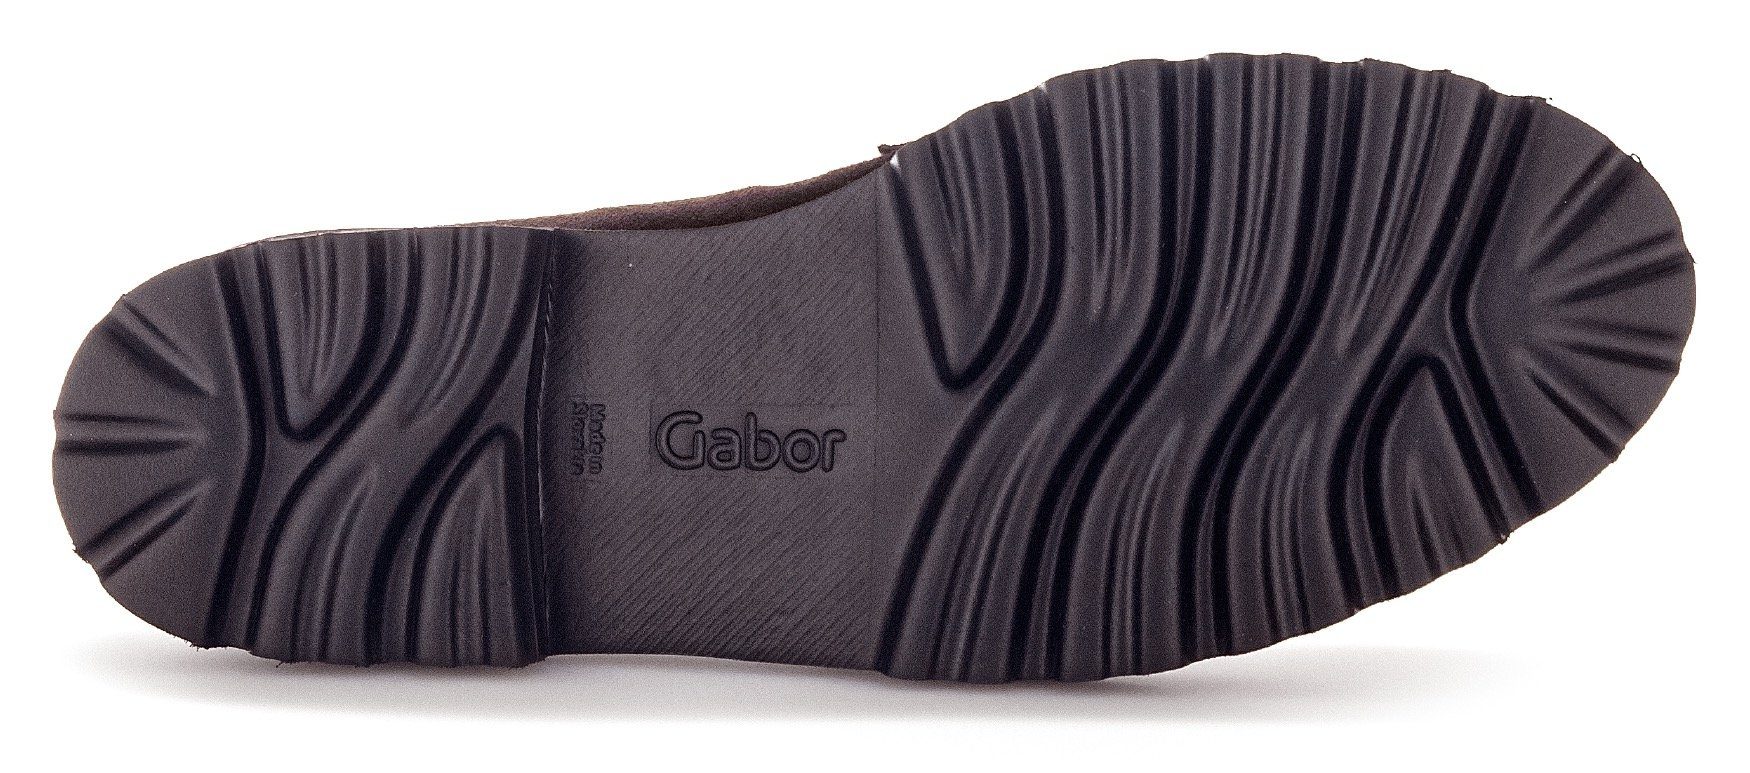 dunkelbraun-schwarz Gabor mit Best Slipper Fitting-Ausstattung